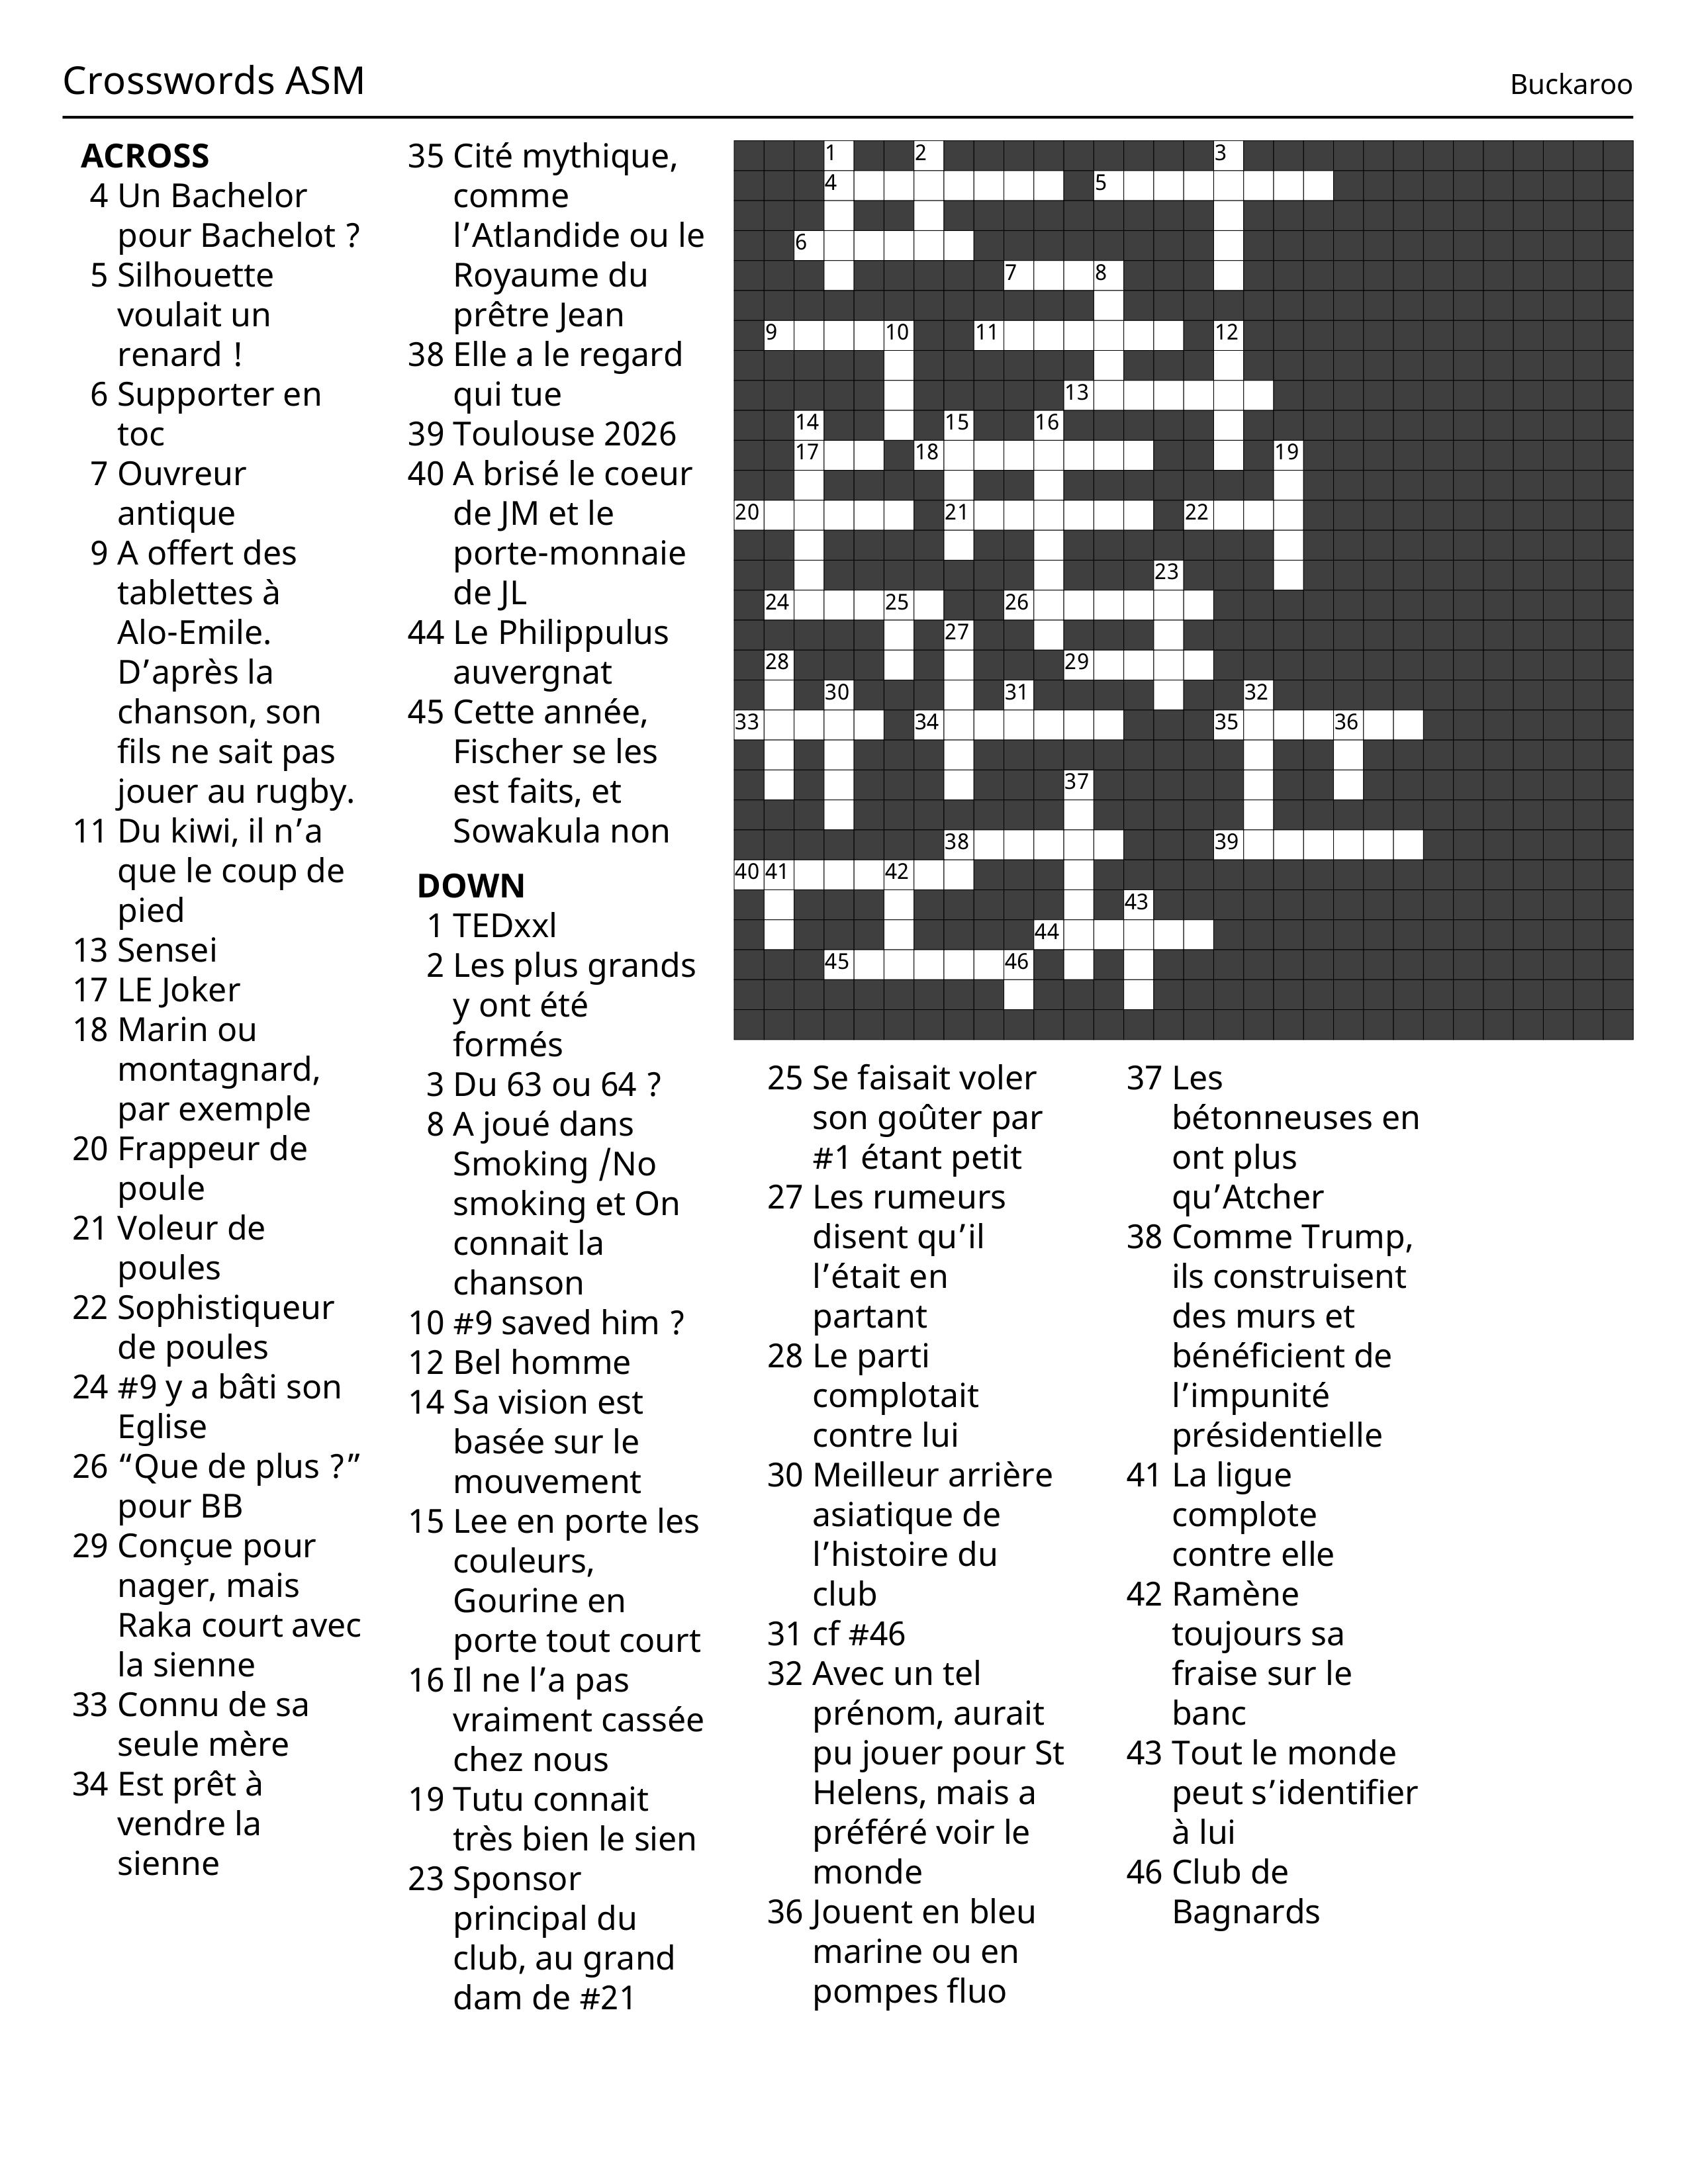 Crosswords%20ASM_page-0001-632ee7.jpeg